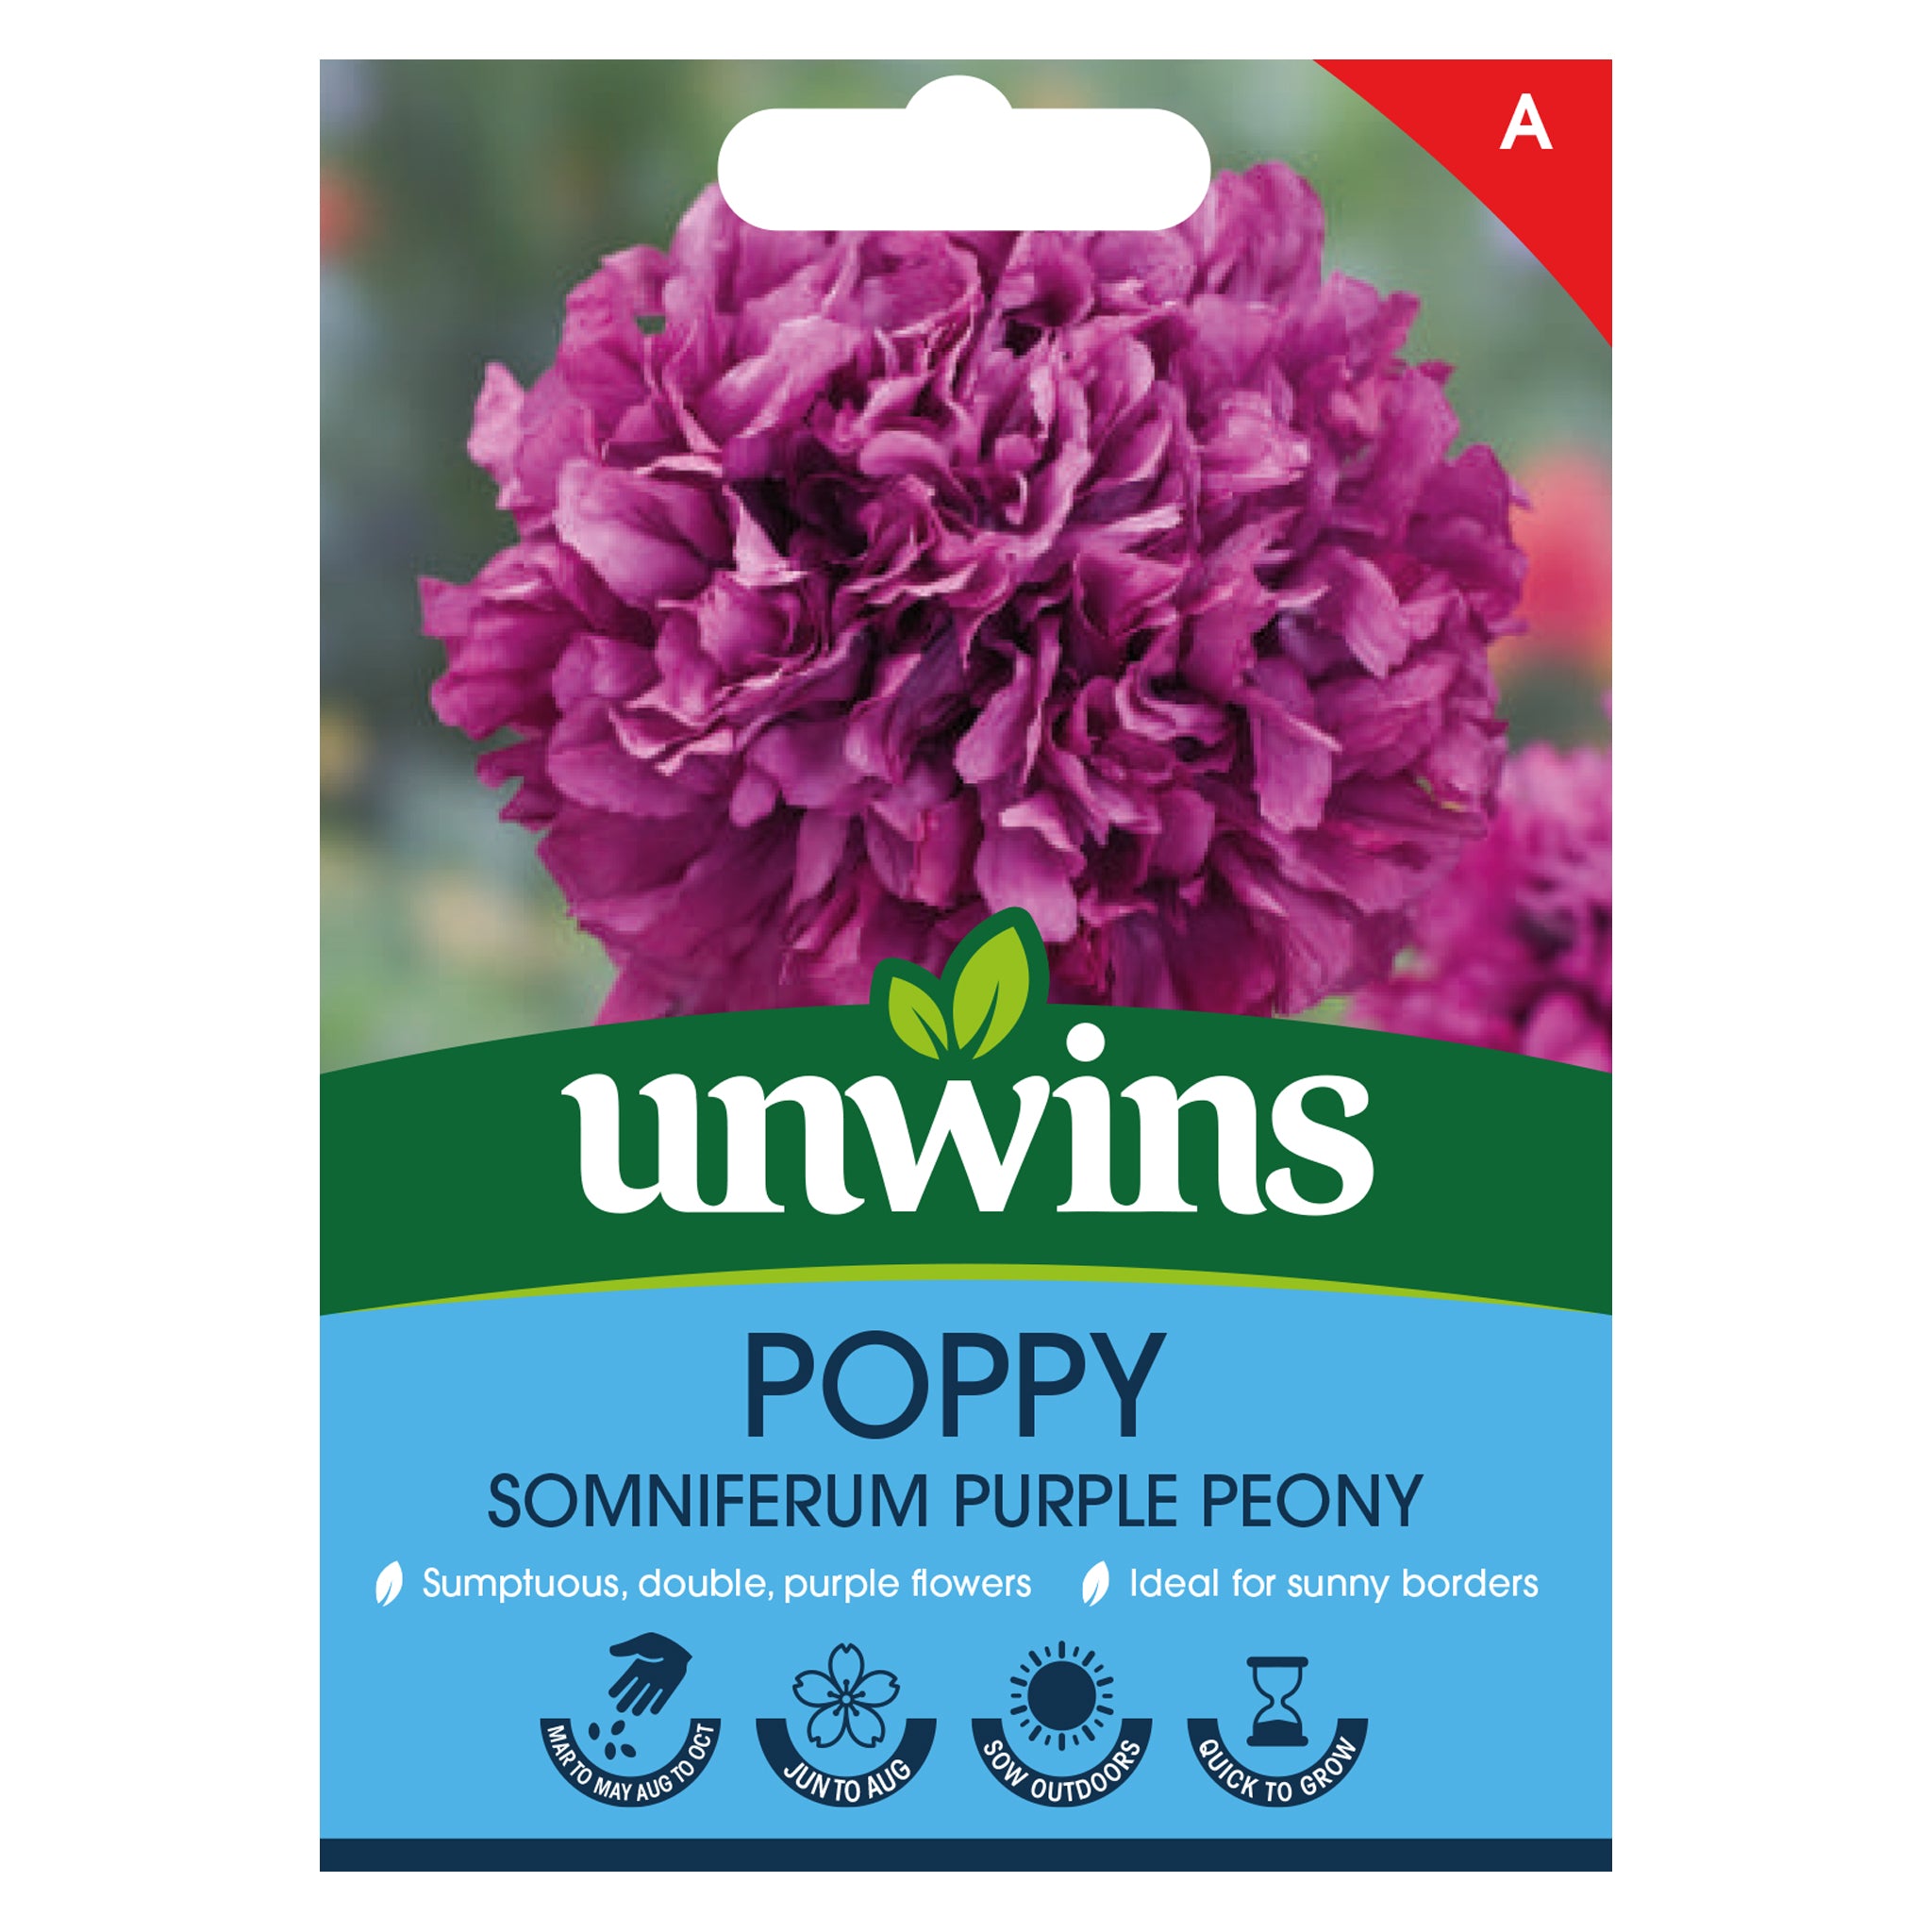 Unwins Poppy Somniferum Purple Peony Seeds